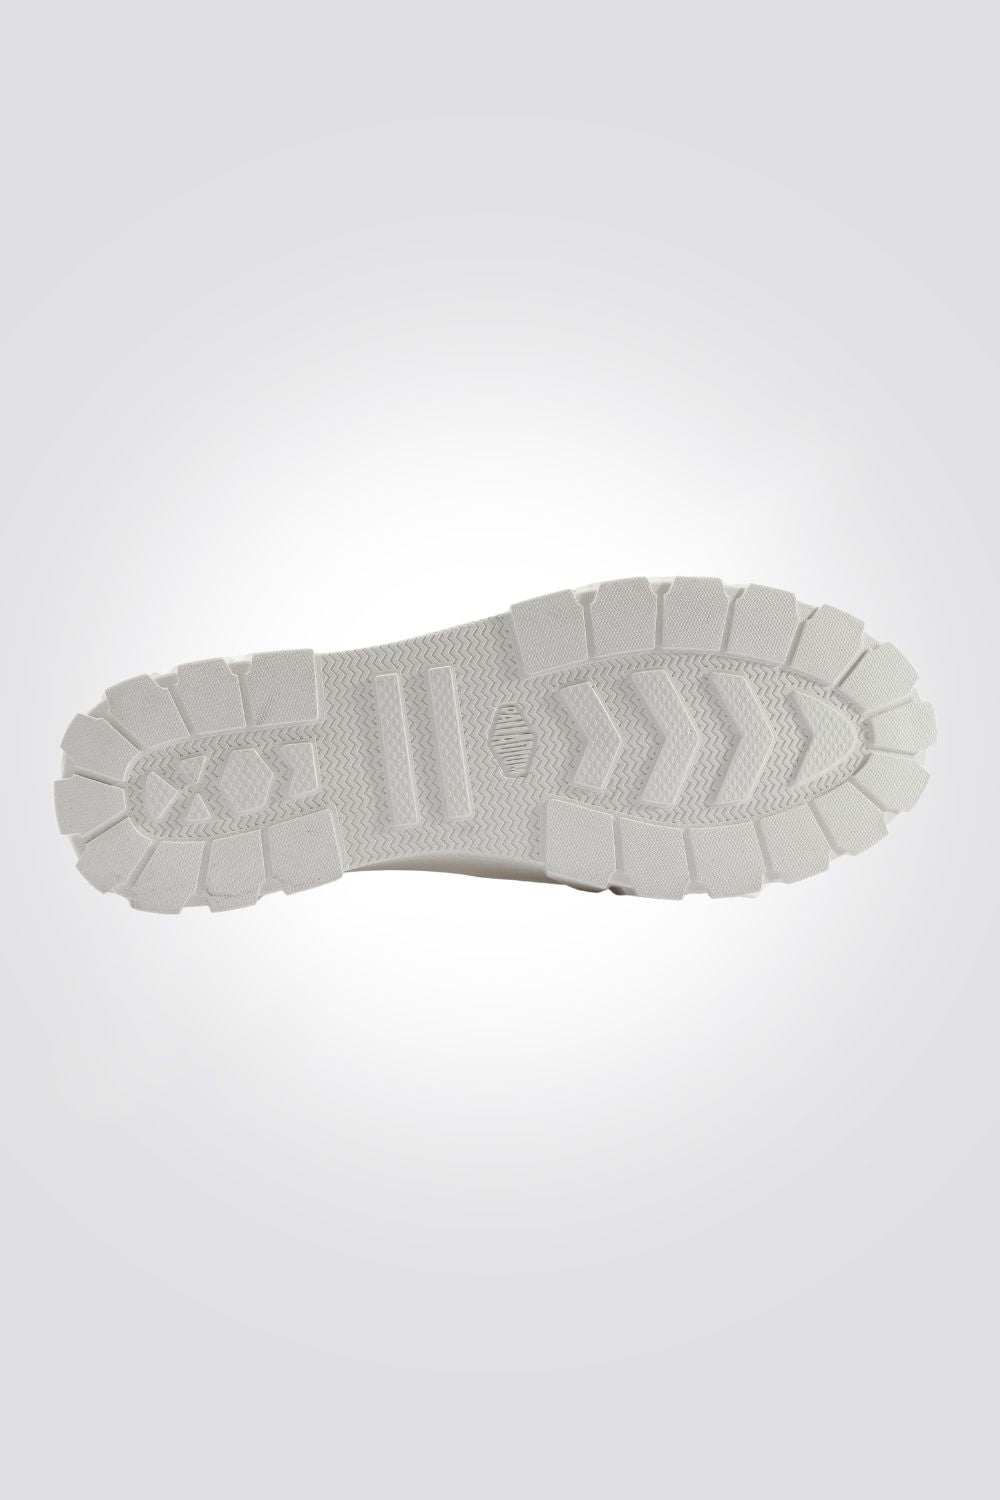 PALLADIUM - נעליים לנשים PALLATOWER LO בצבע לבן - MASHBIR//365